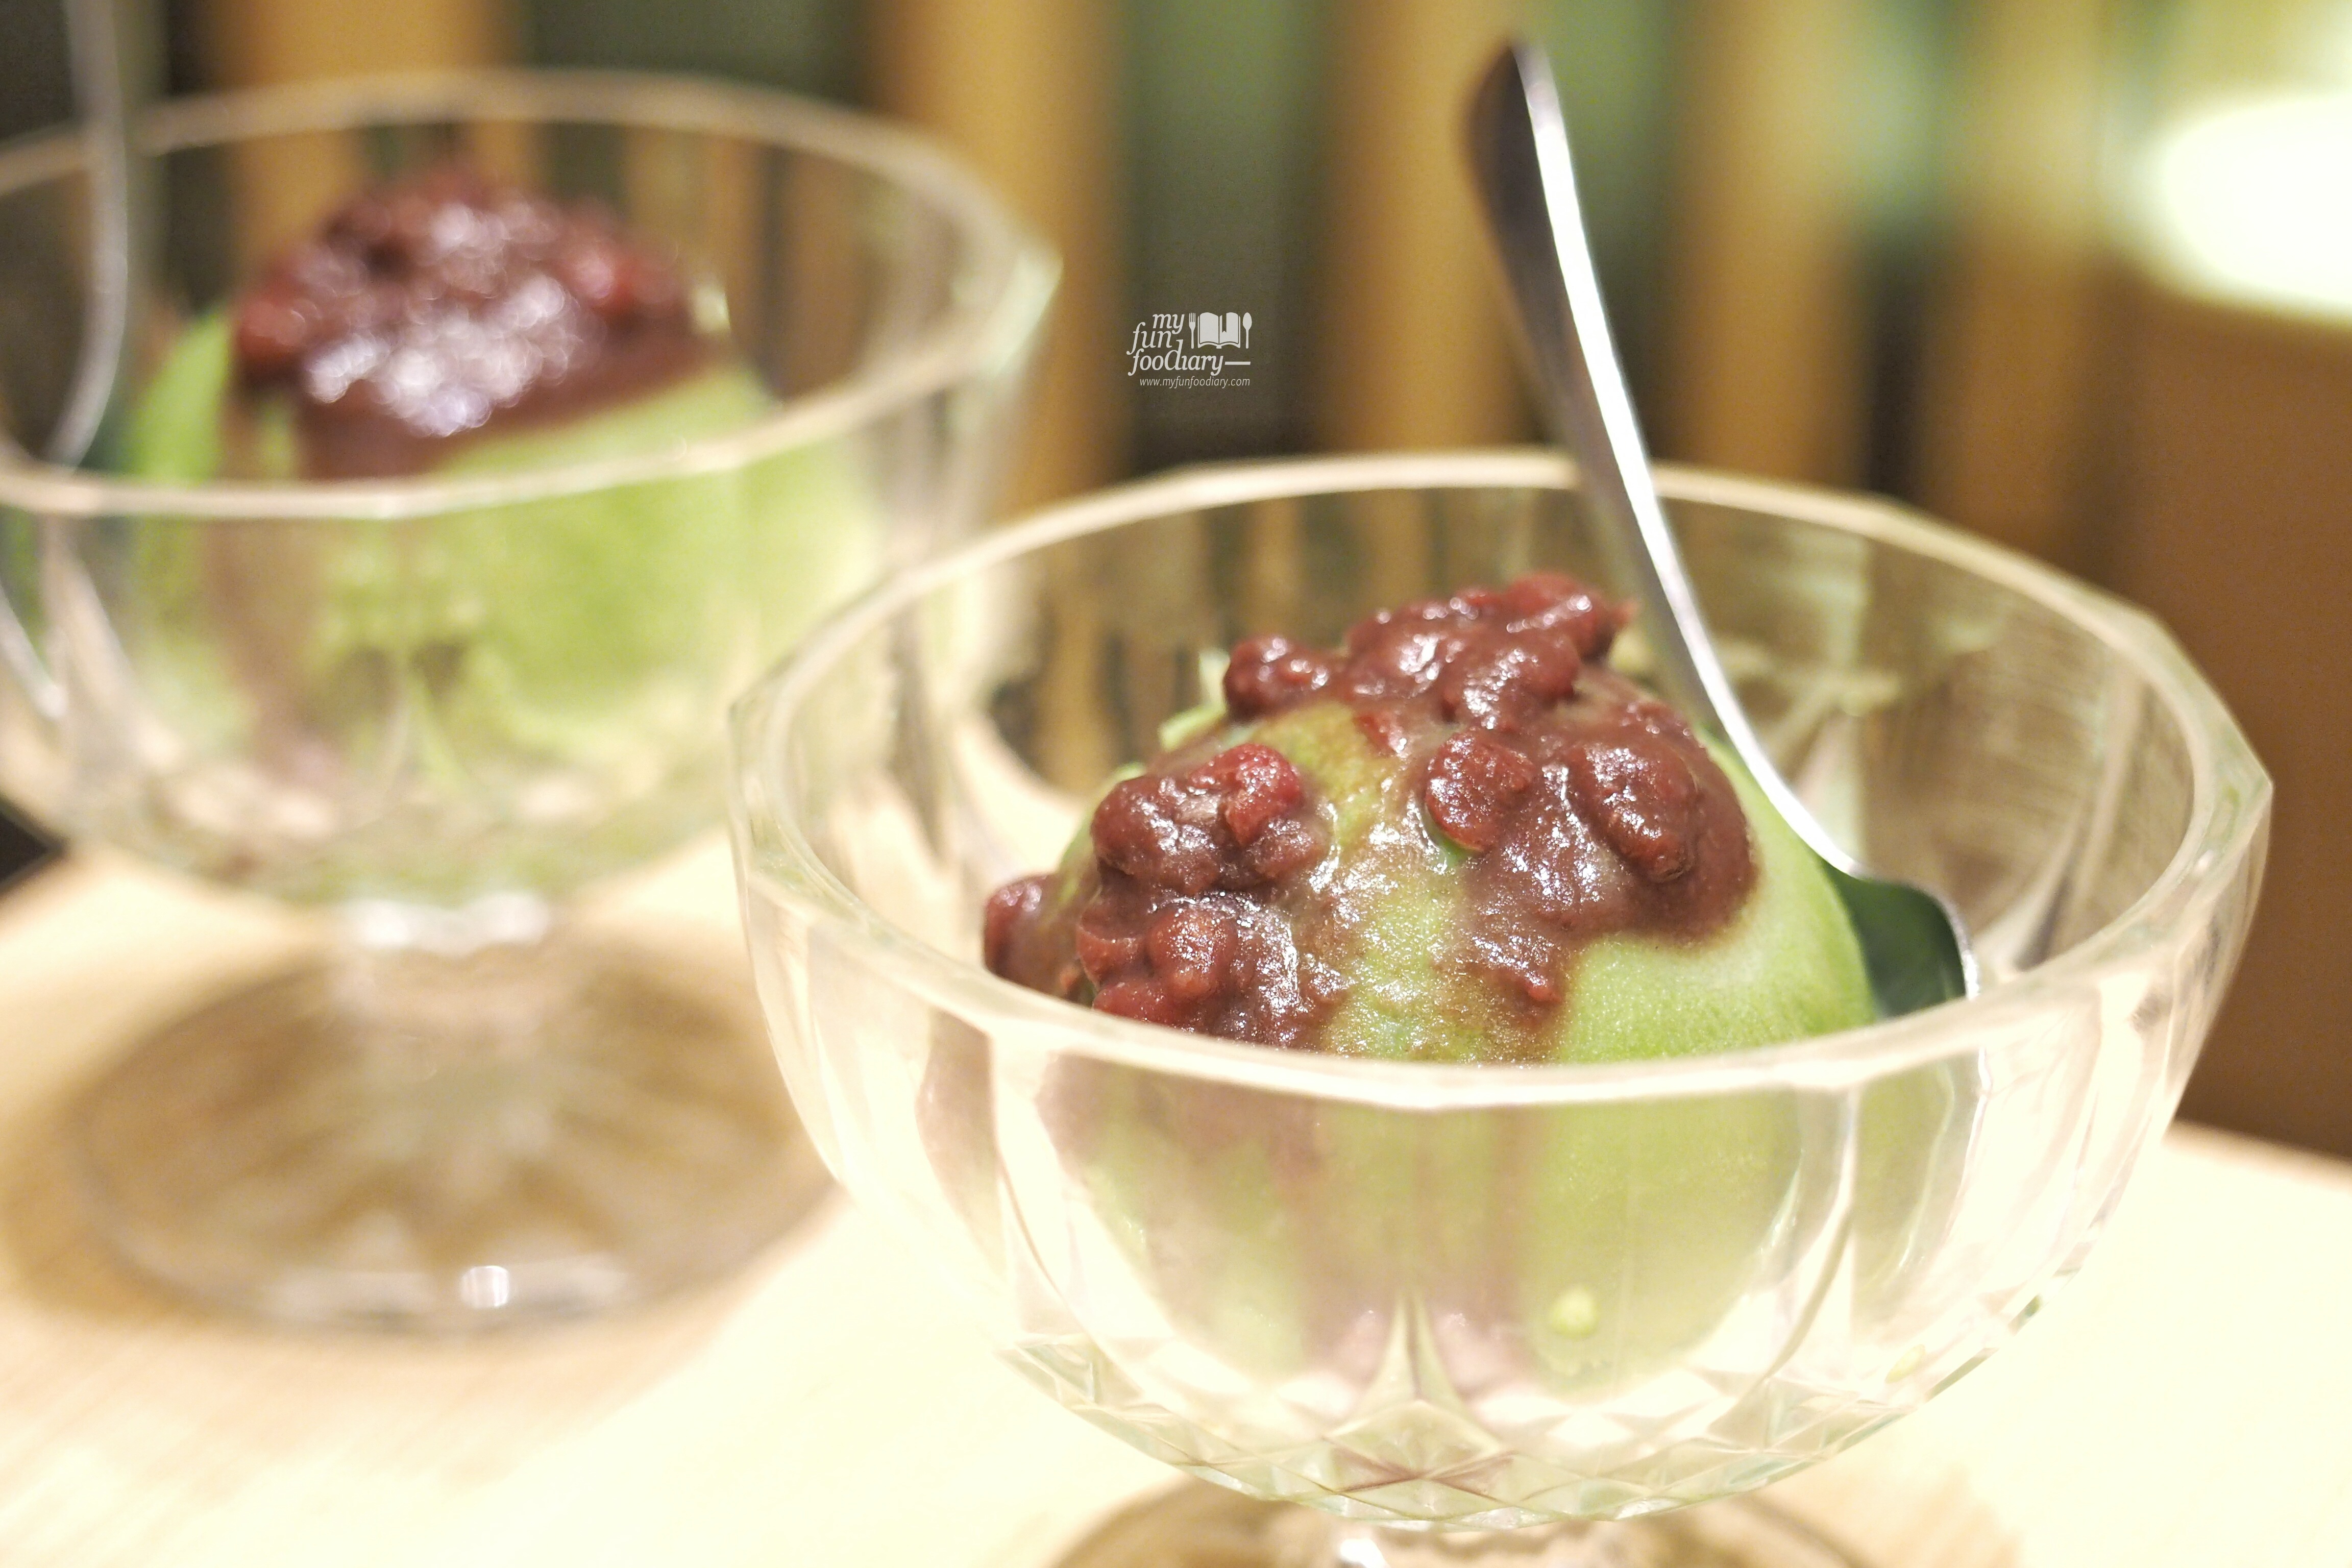 Green Tea Ice Cream at Itacho Sushi by Myfunfoodiary